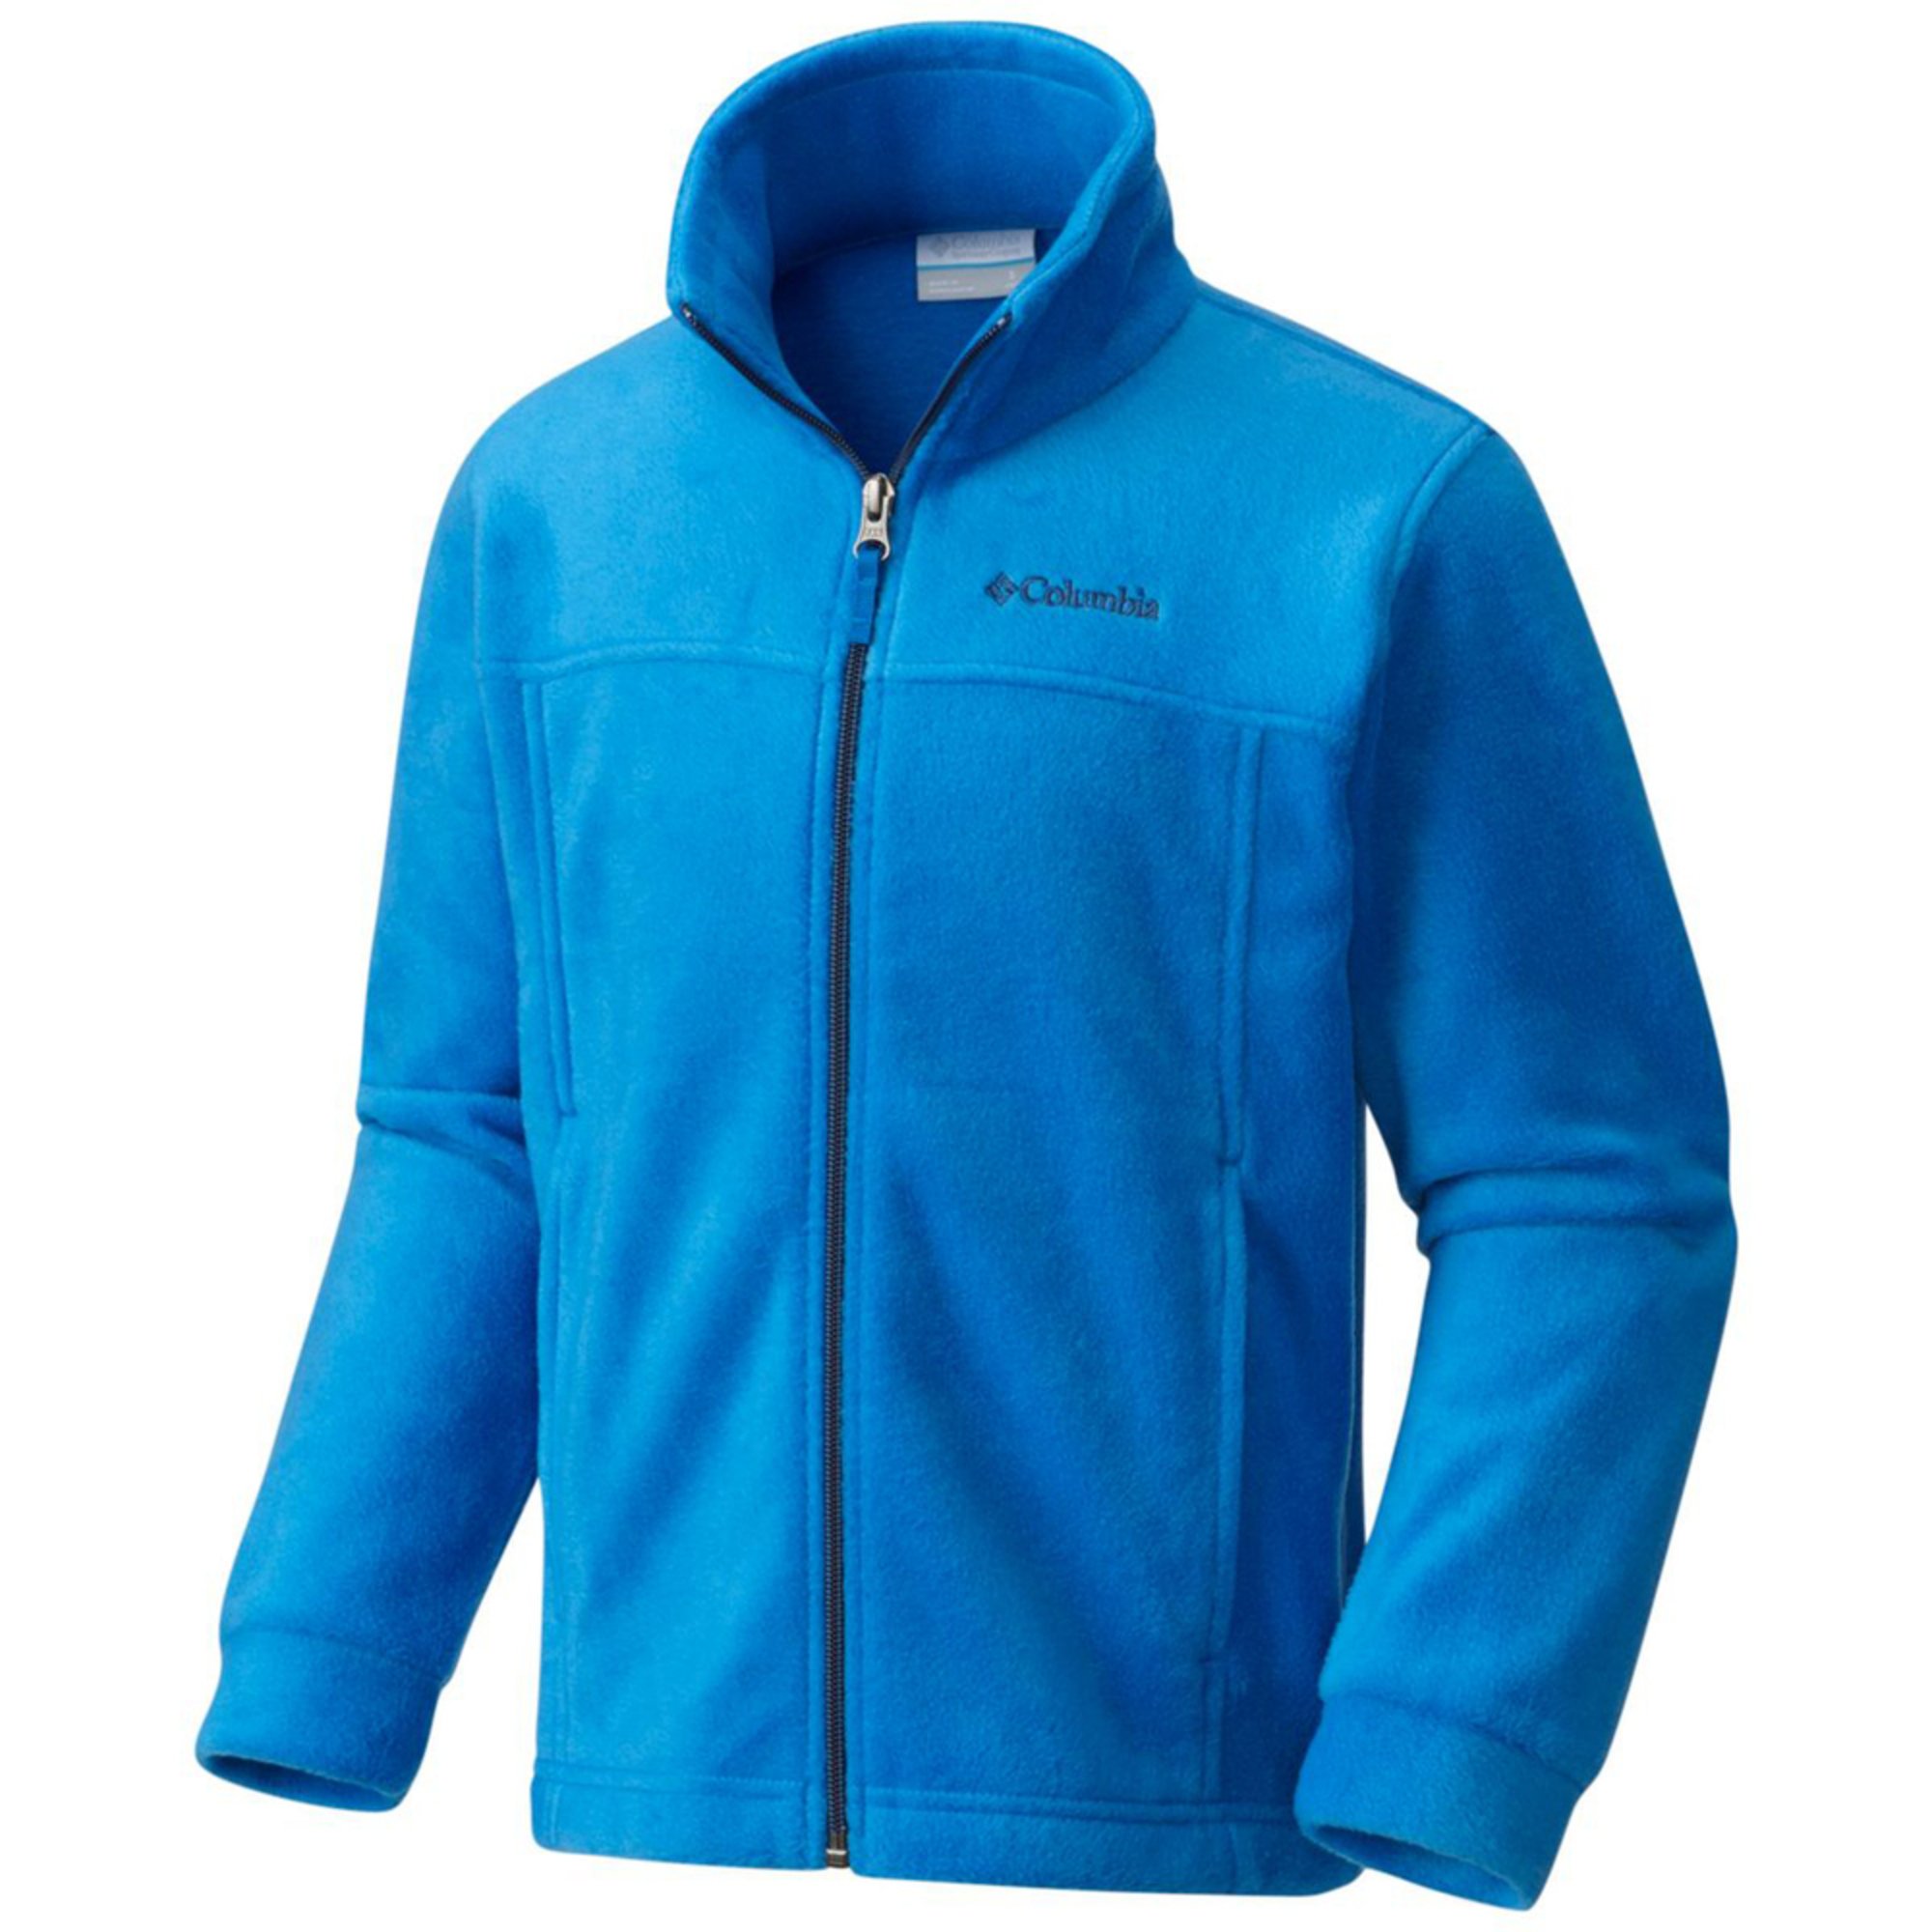 columbia blue fleece jacket